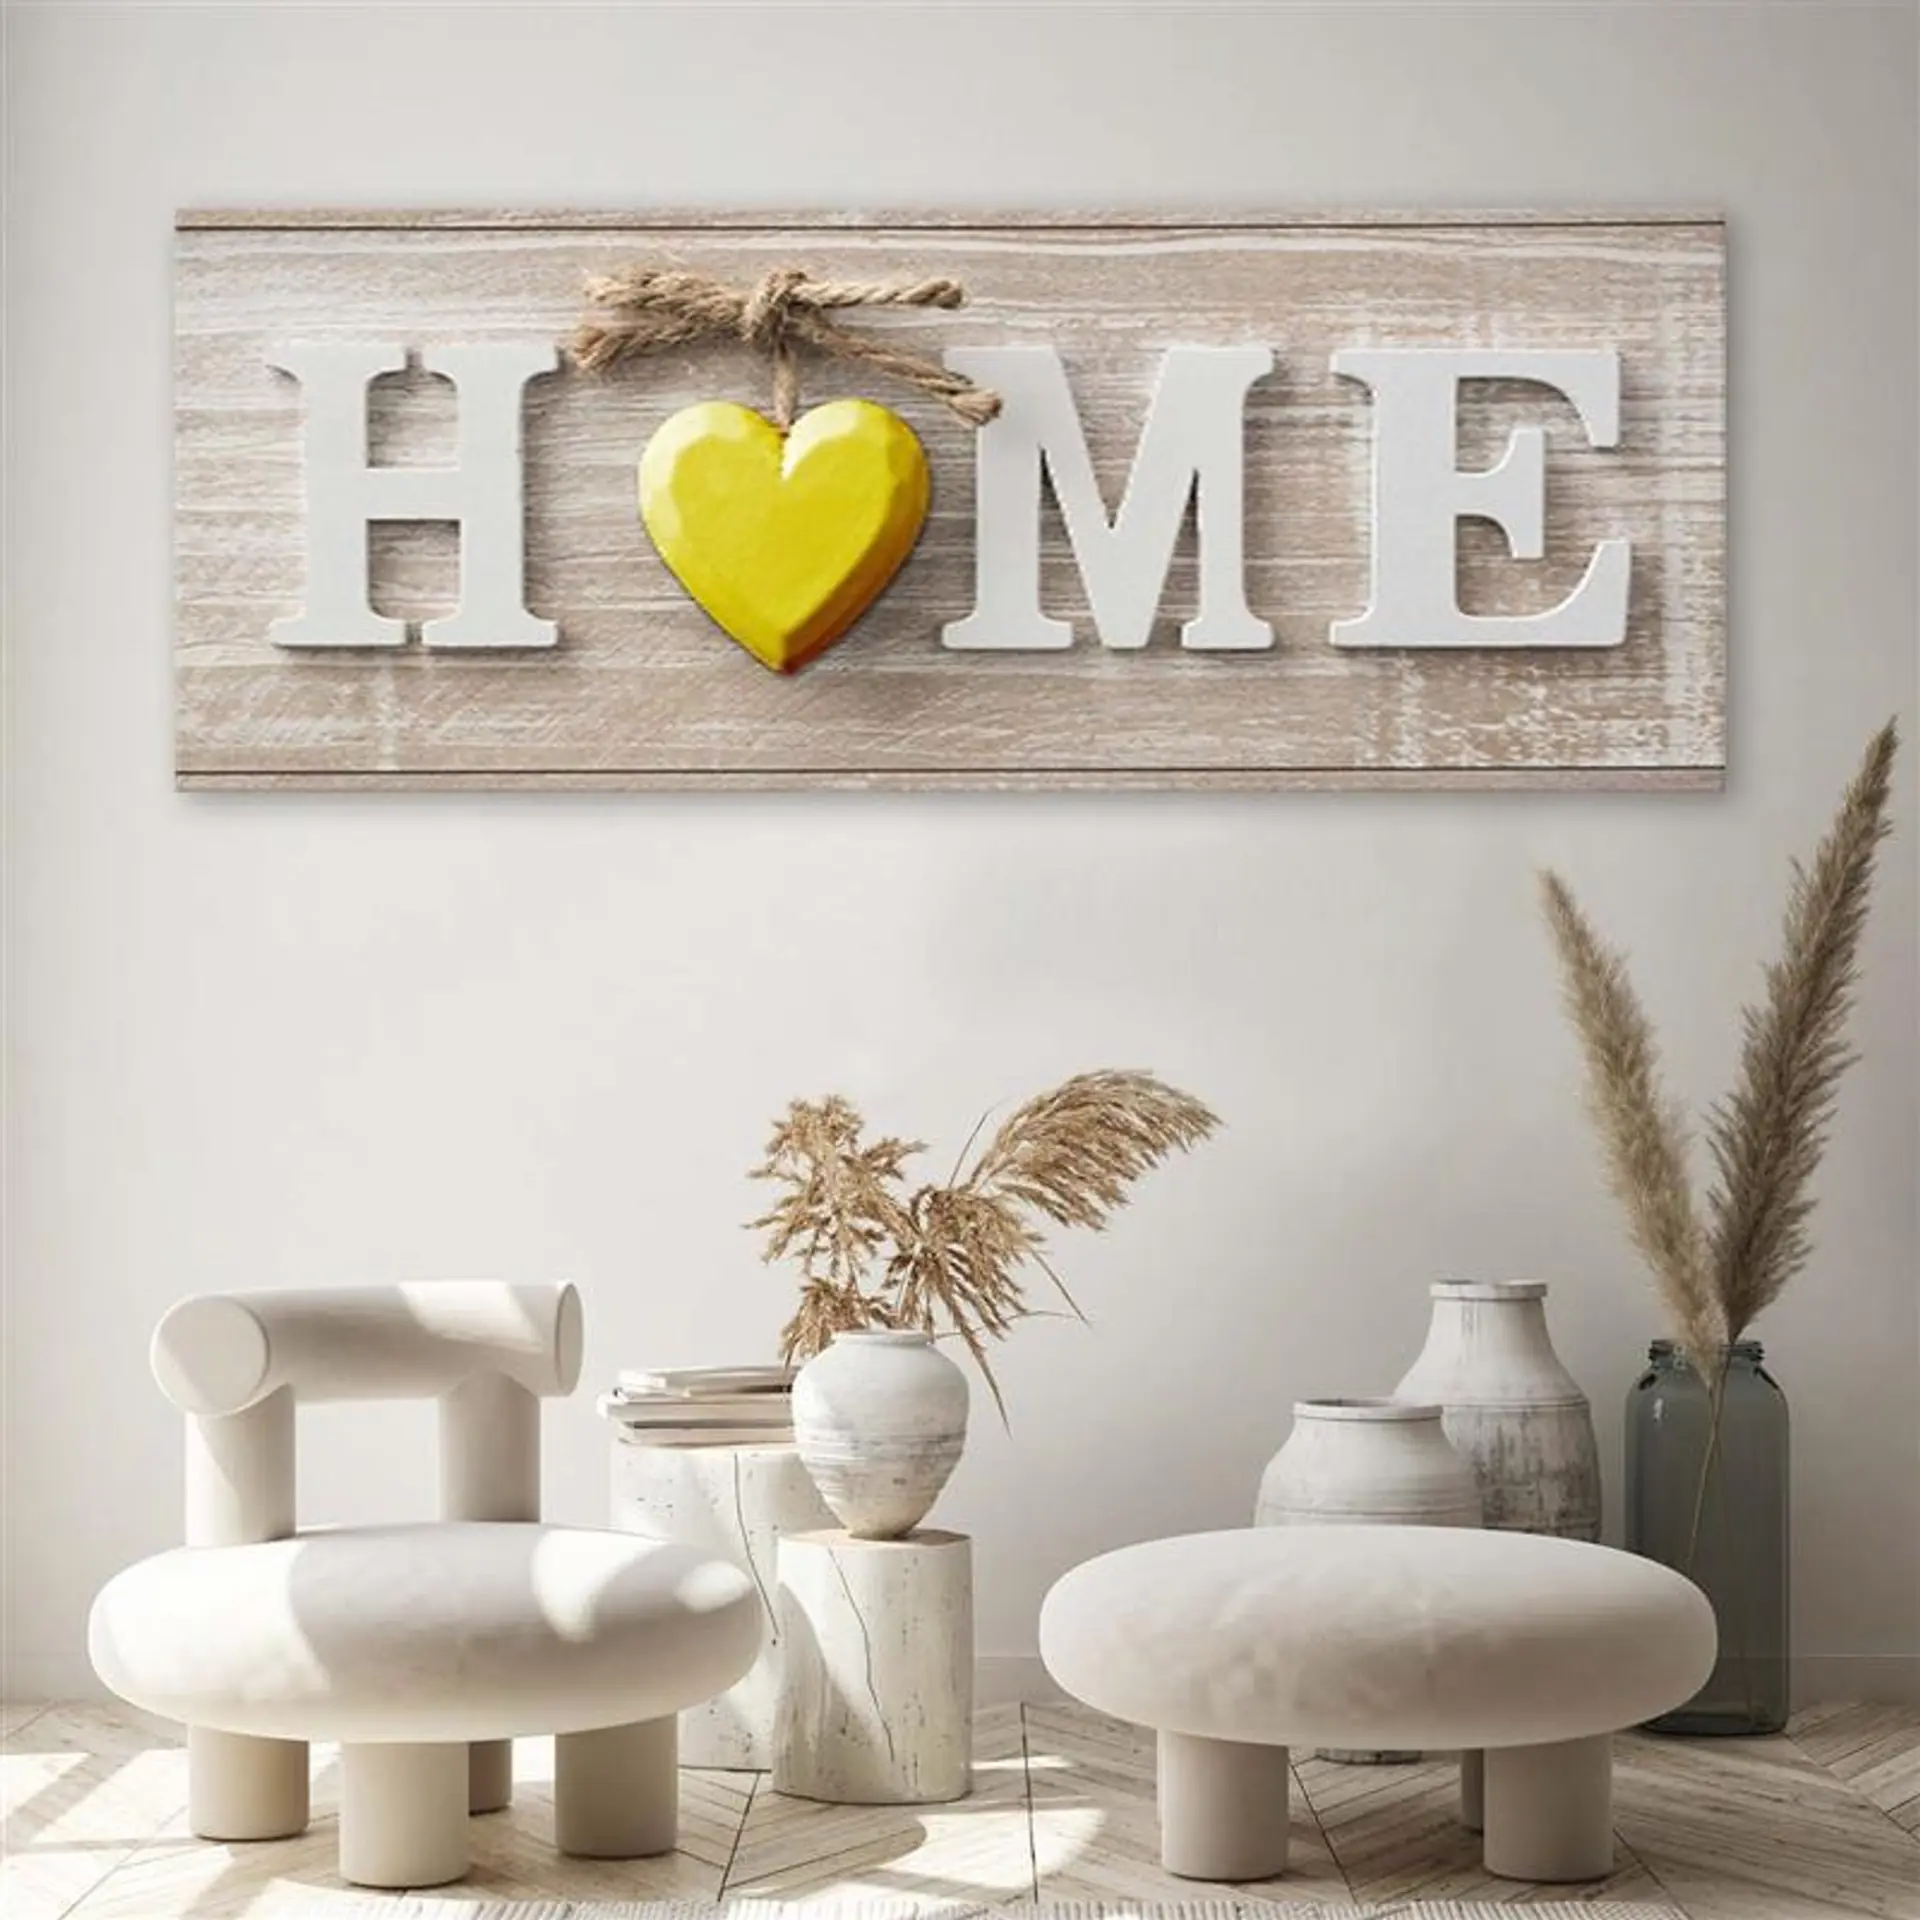 

Obraz Deco Panel, Napis Home z zółtym sercem na jasnym drewnie (Rozmiar 150x50)